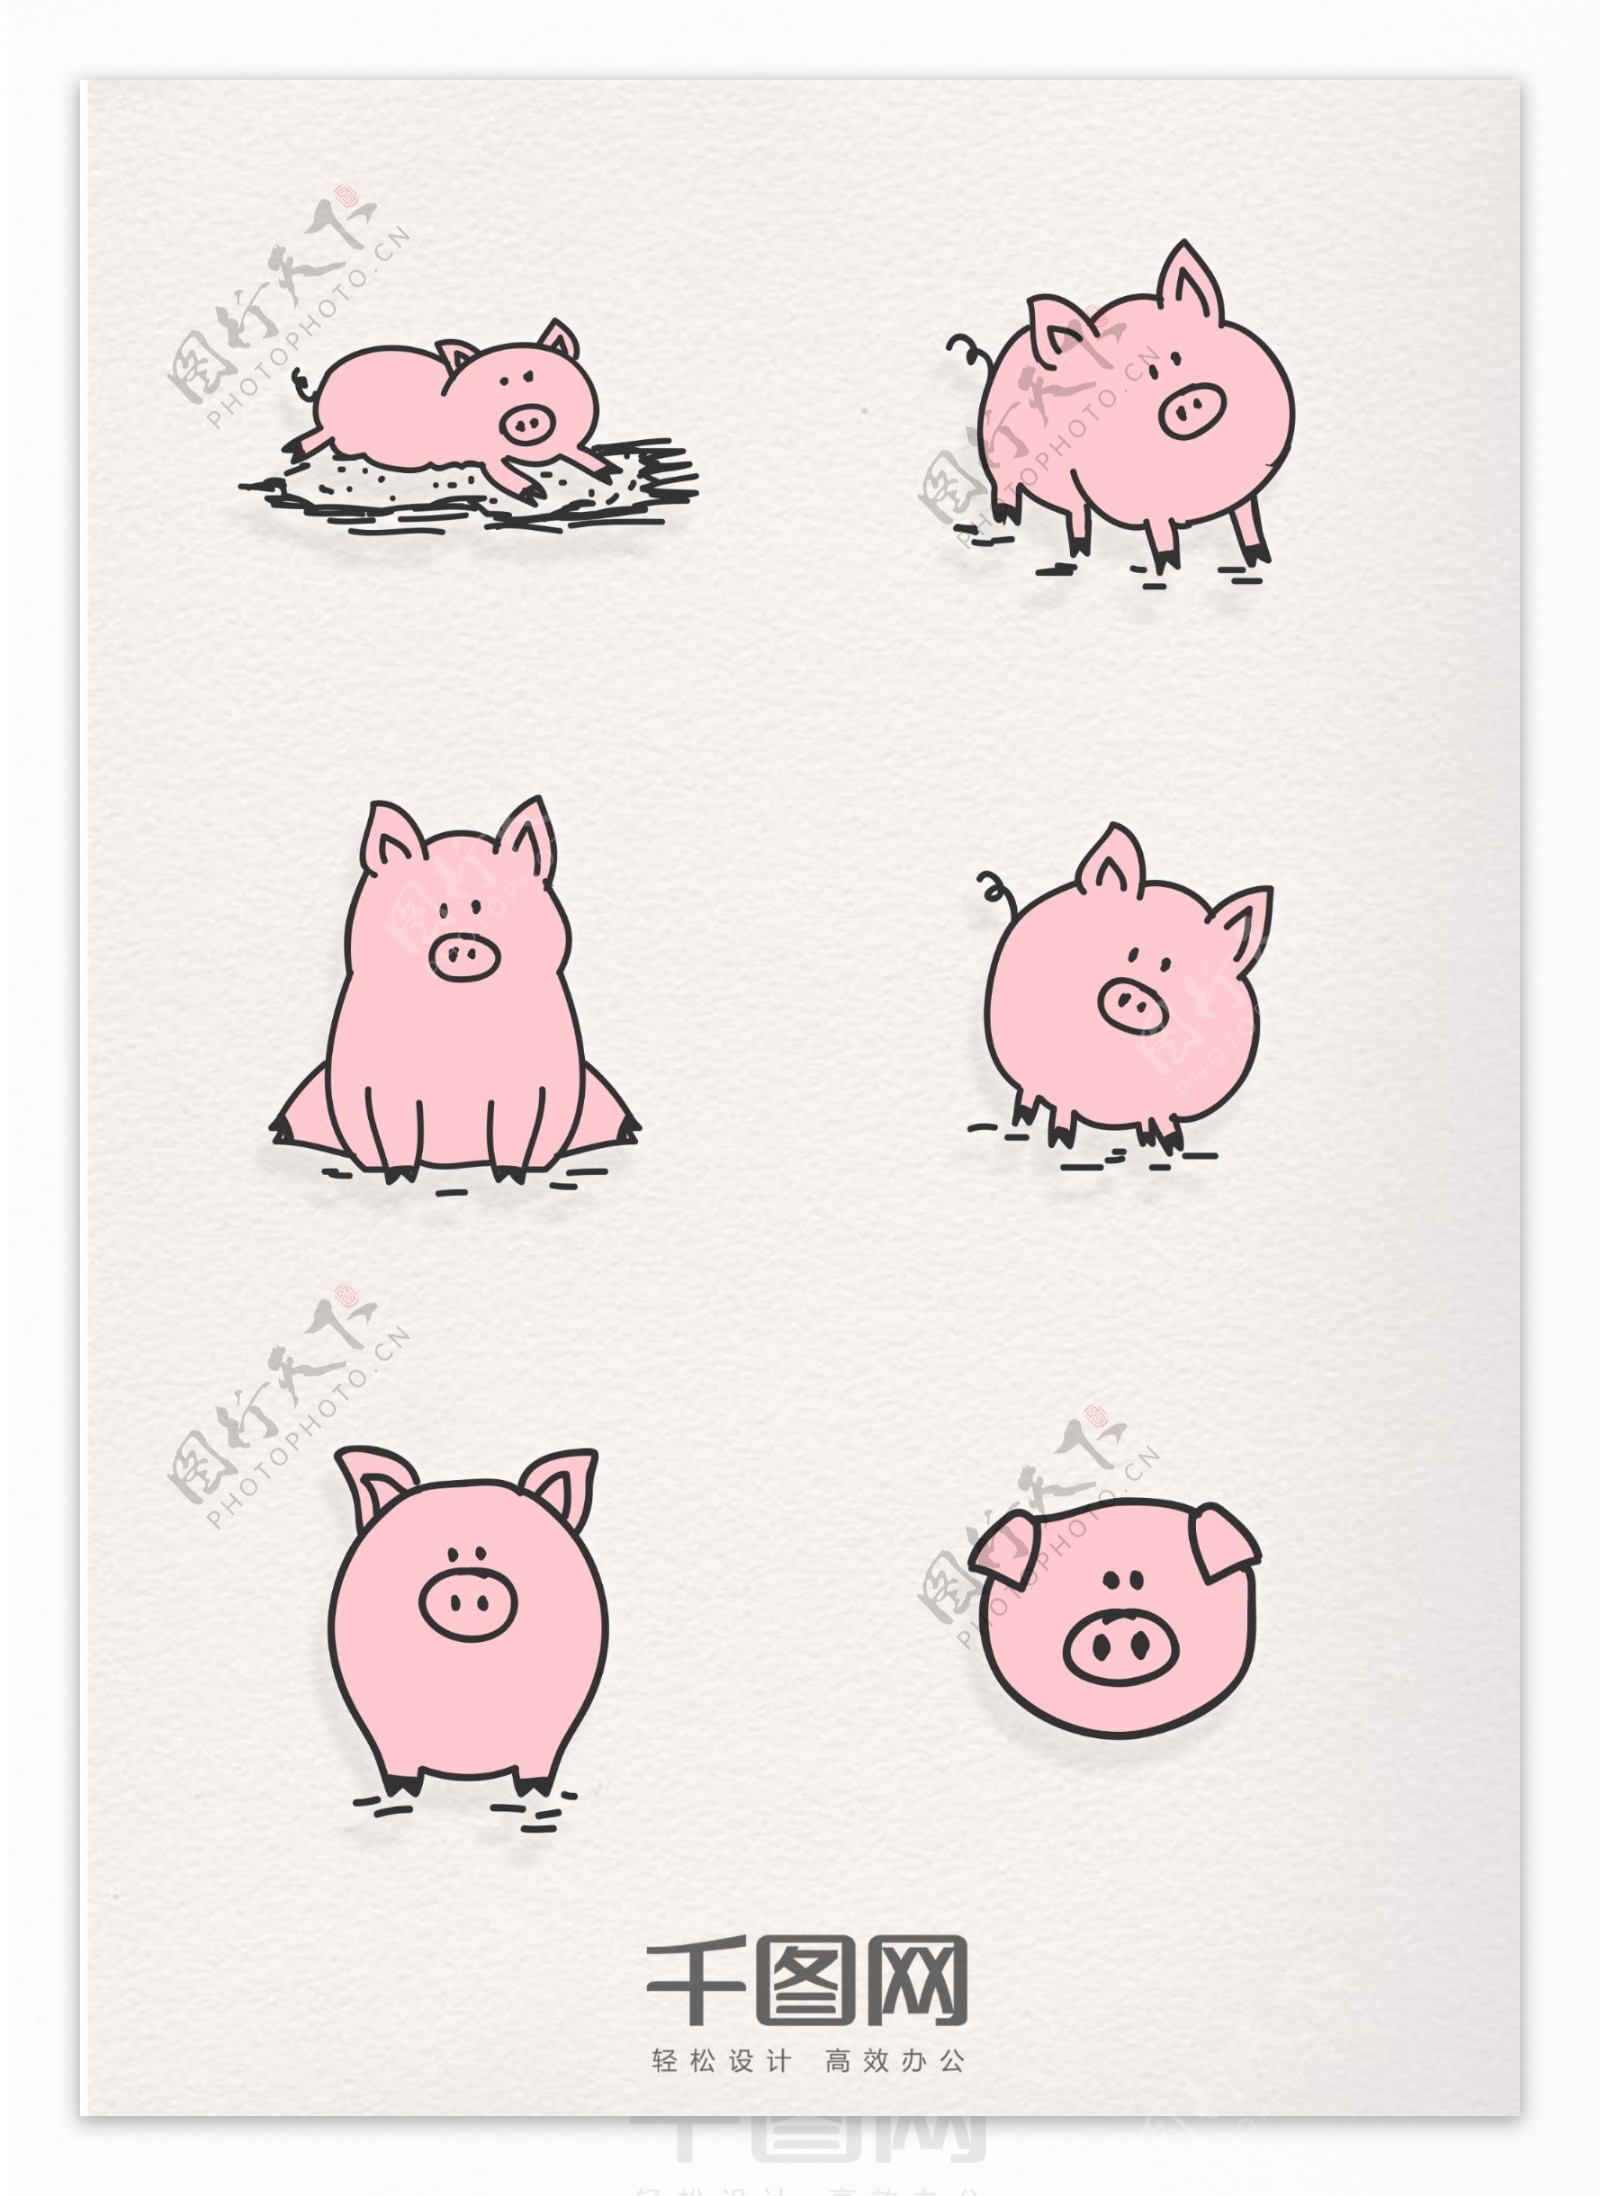 卡通可爱粉猪元素图标